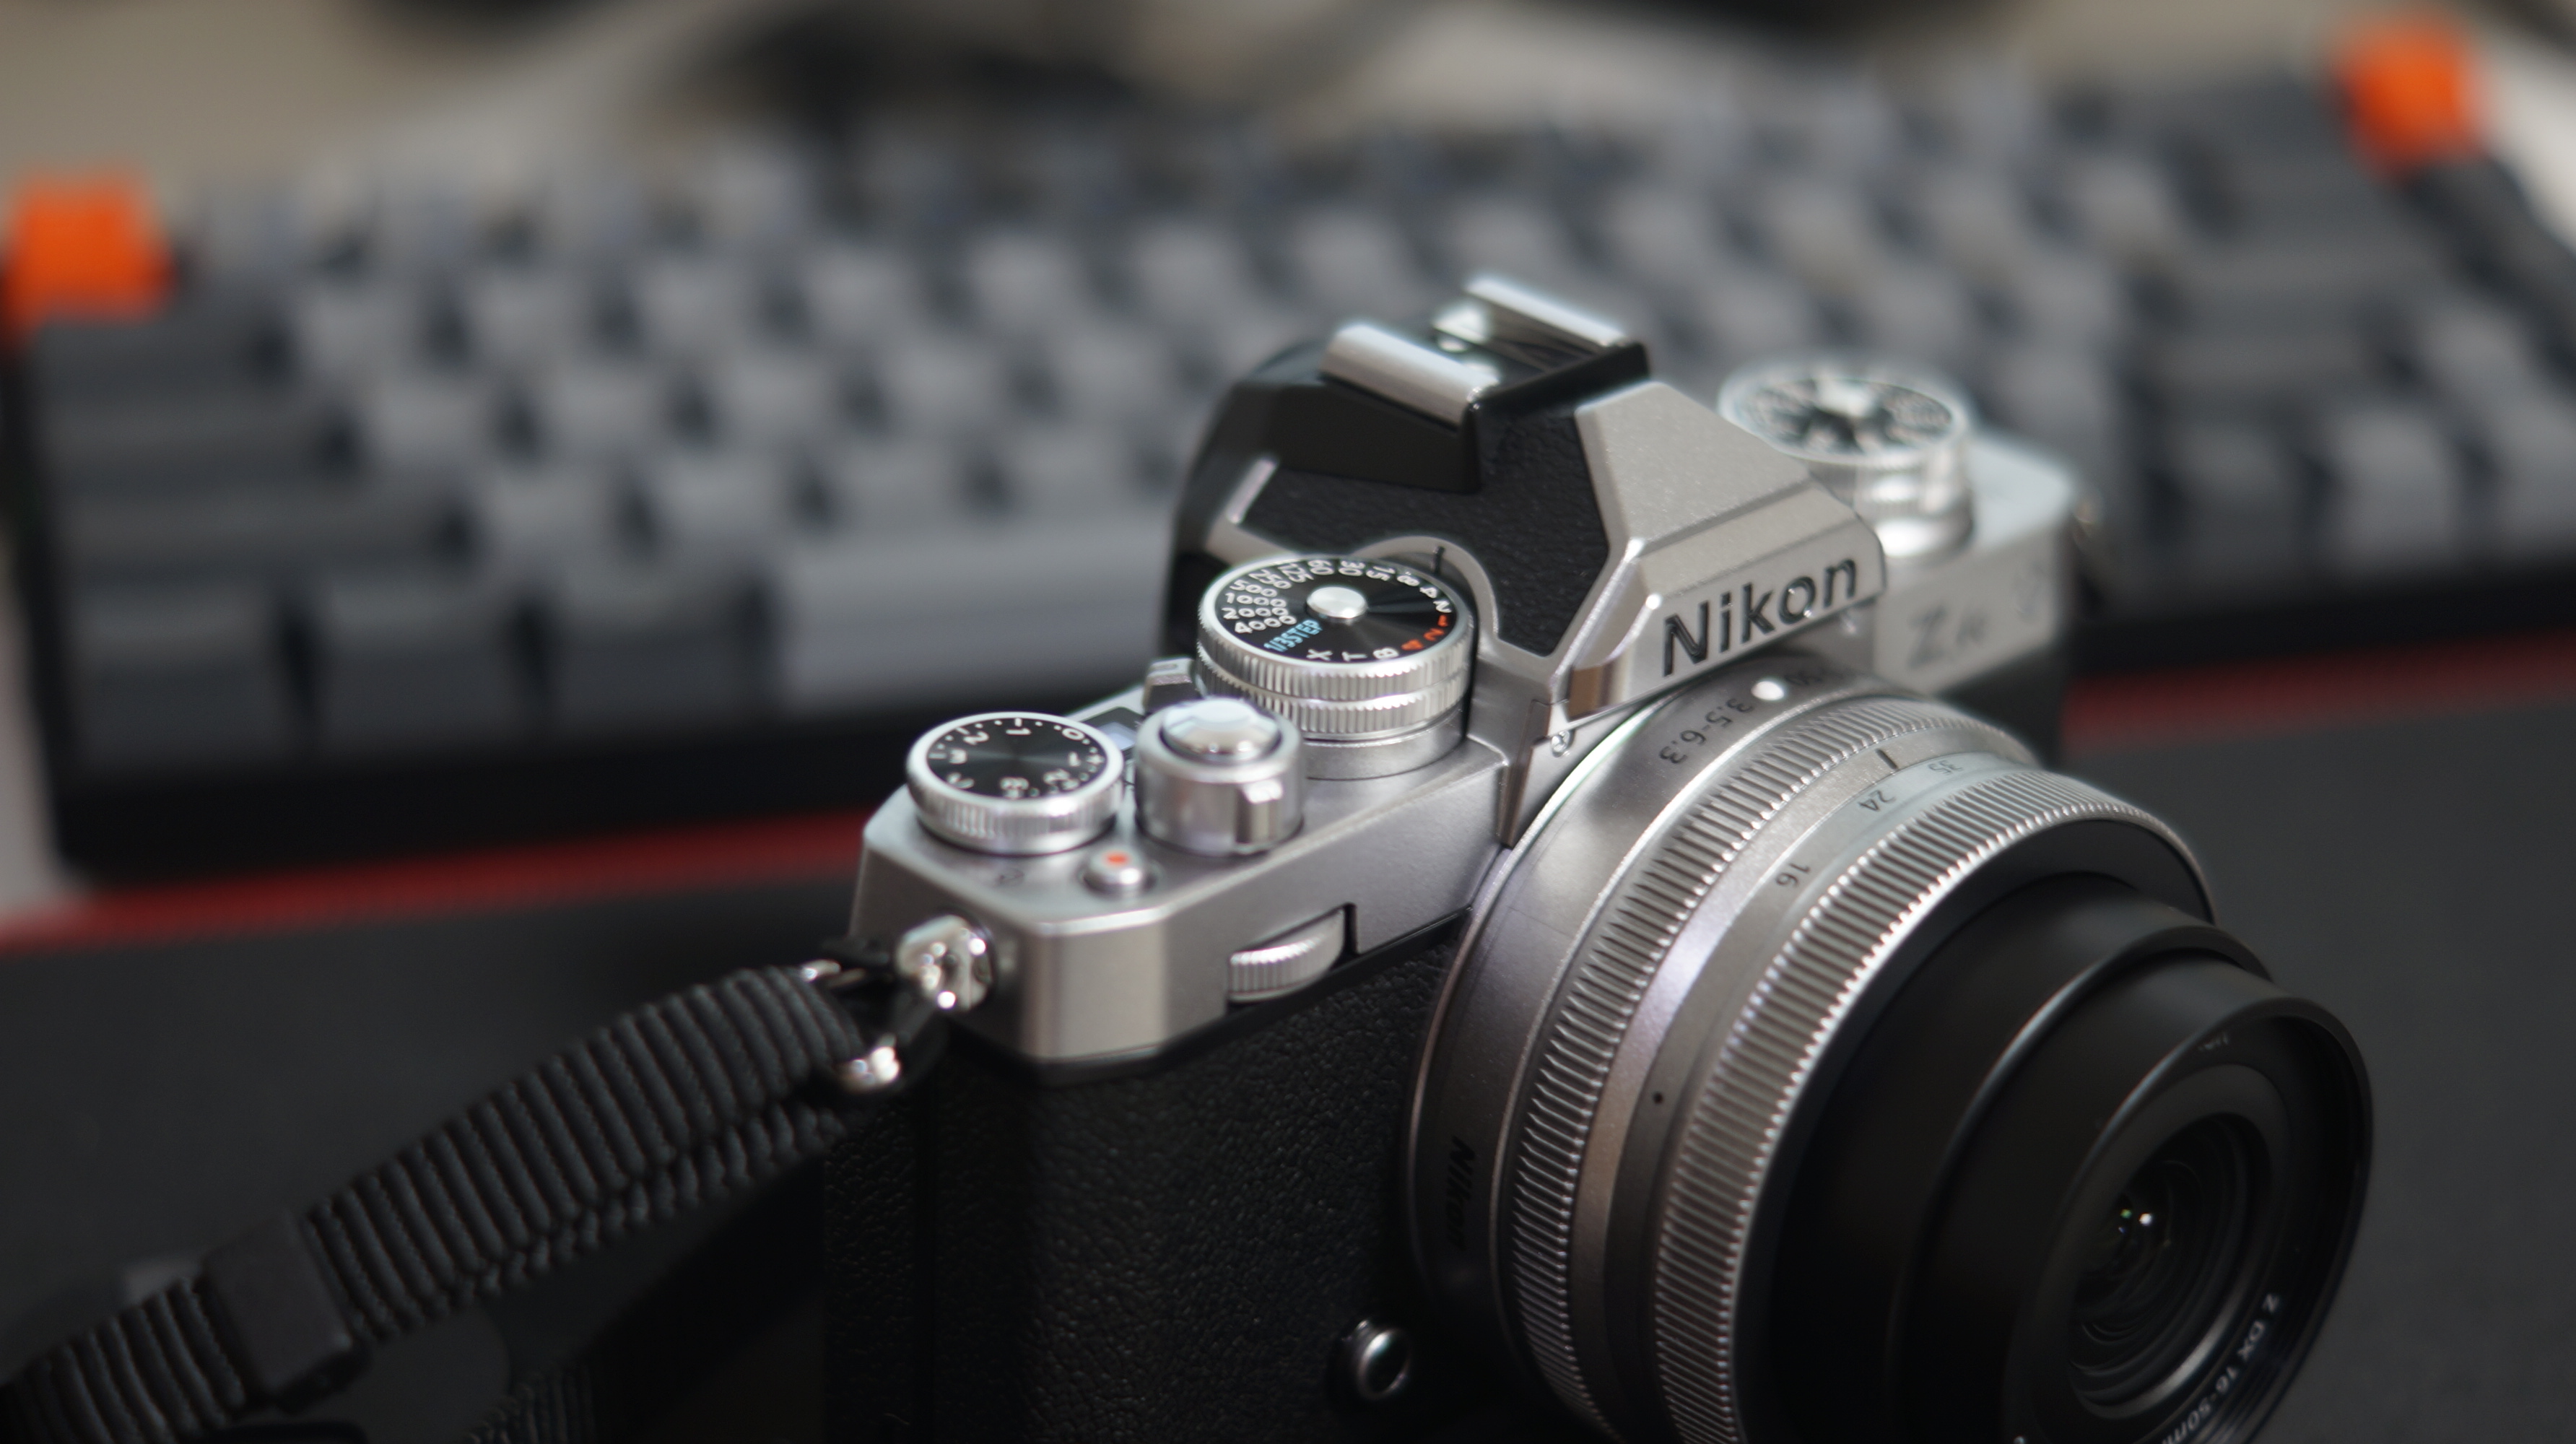 니콘 Zfc 레트로 디자인의 미러리스 디지털카메라 개봉기 사진10